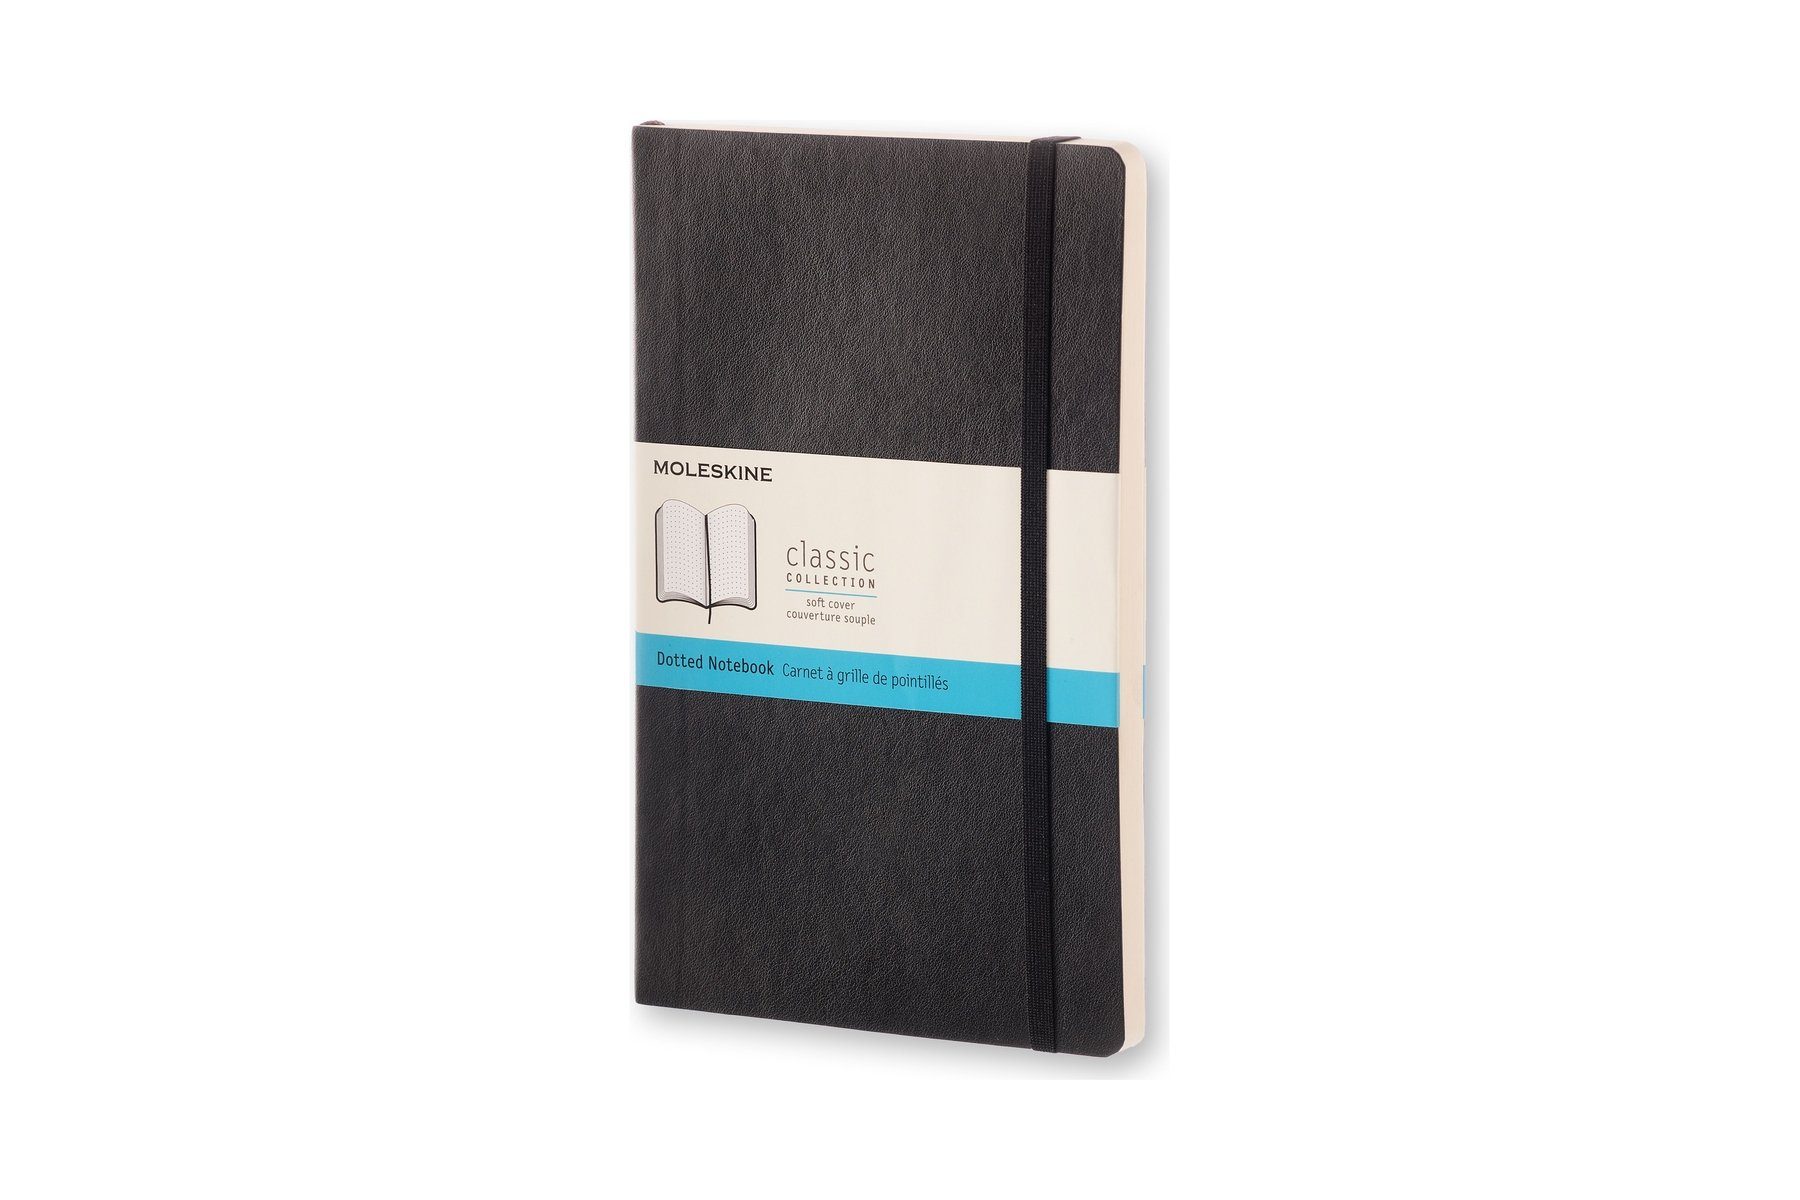 MOLESKINE Notizbuch, Classic Collection - Soft Cover - L/A5 Groß (13x21) - mit weichem Einband - 70g-Papier Schwarz